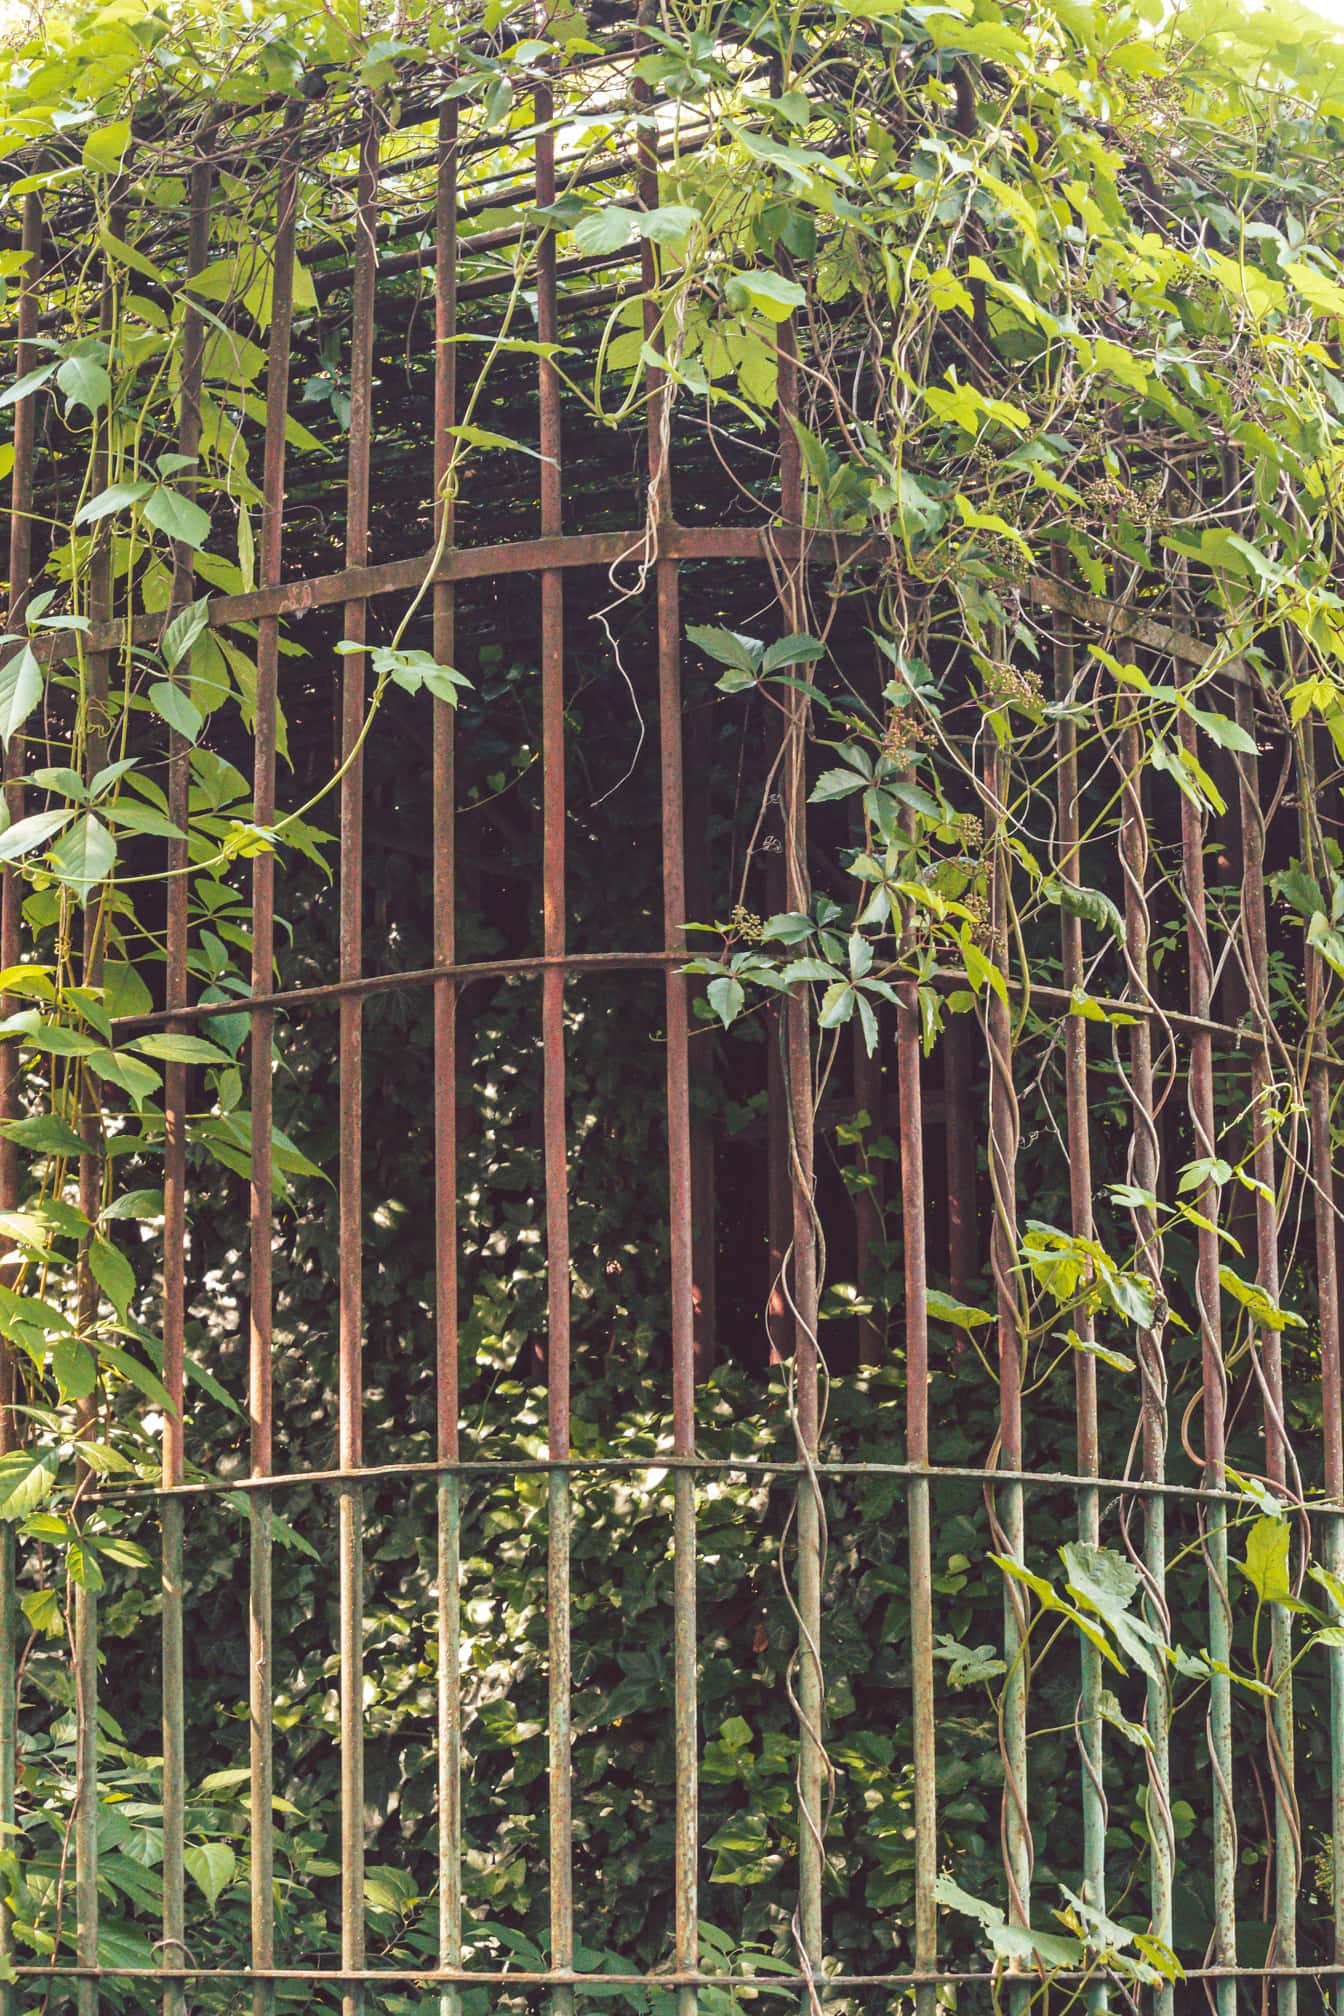 Vieja jaula de hierro fundido abandonada cubierta de ramas de maleza